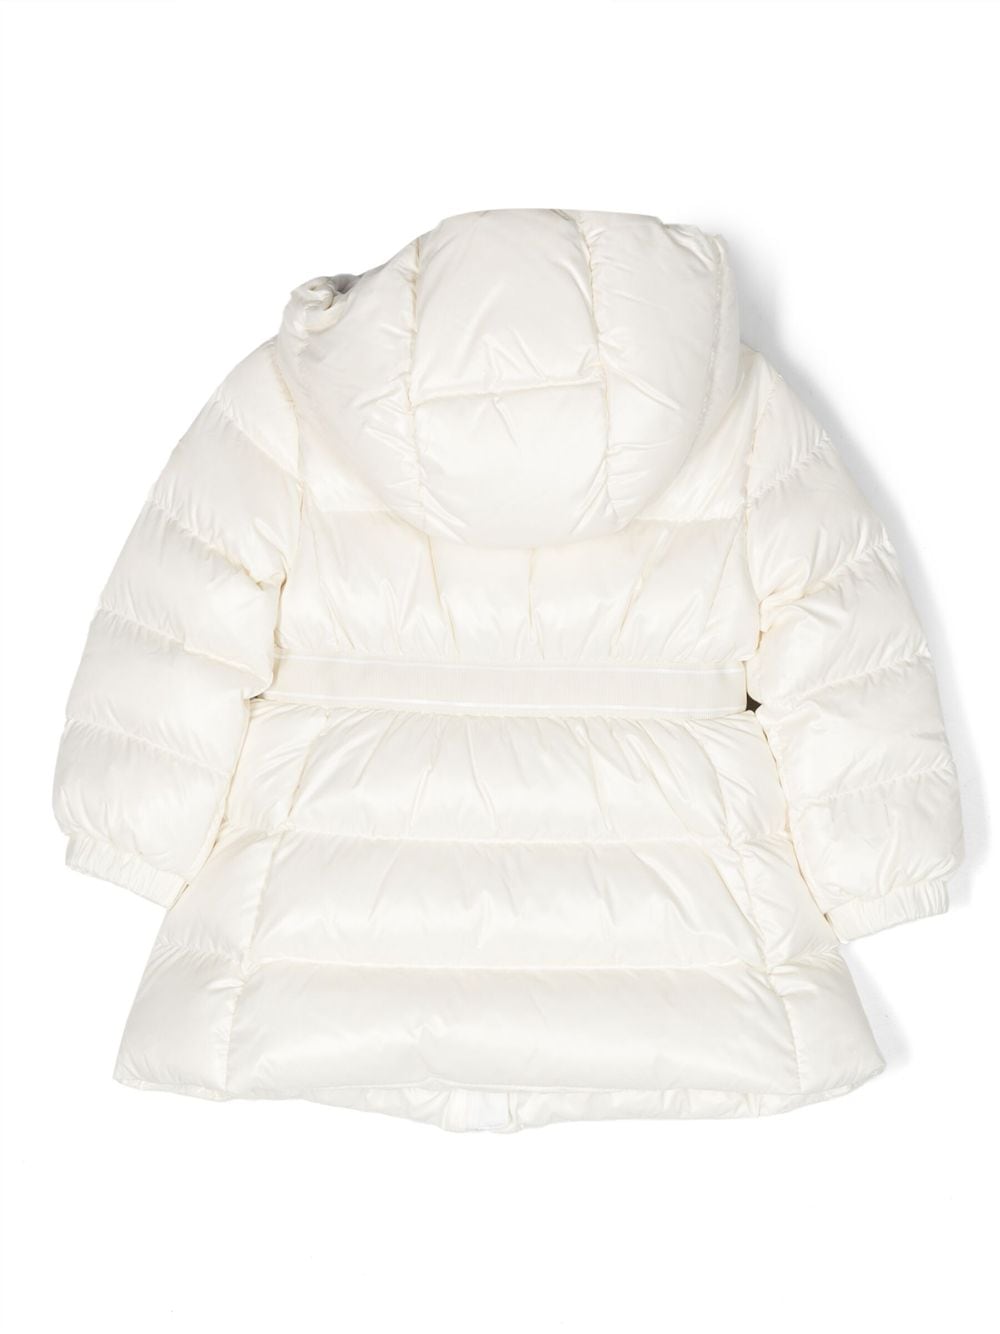 Manteau bébé fille blanc avec appliqué